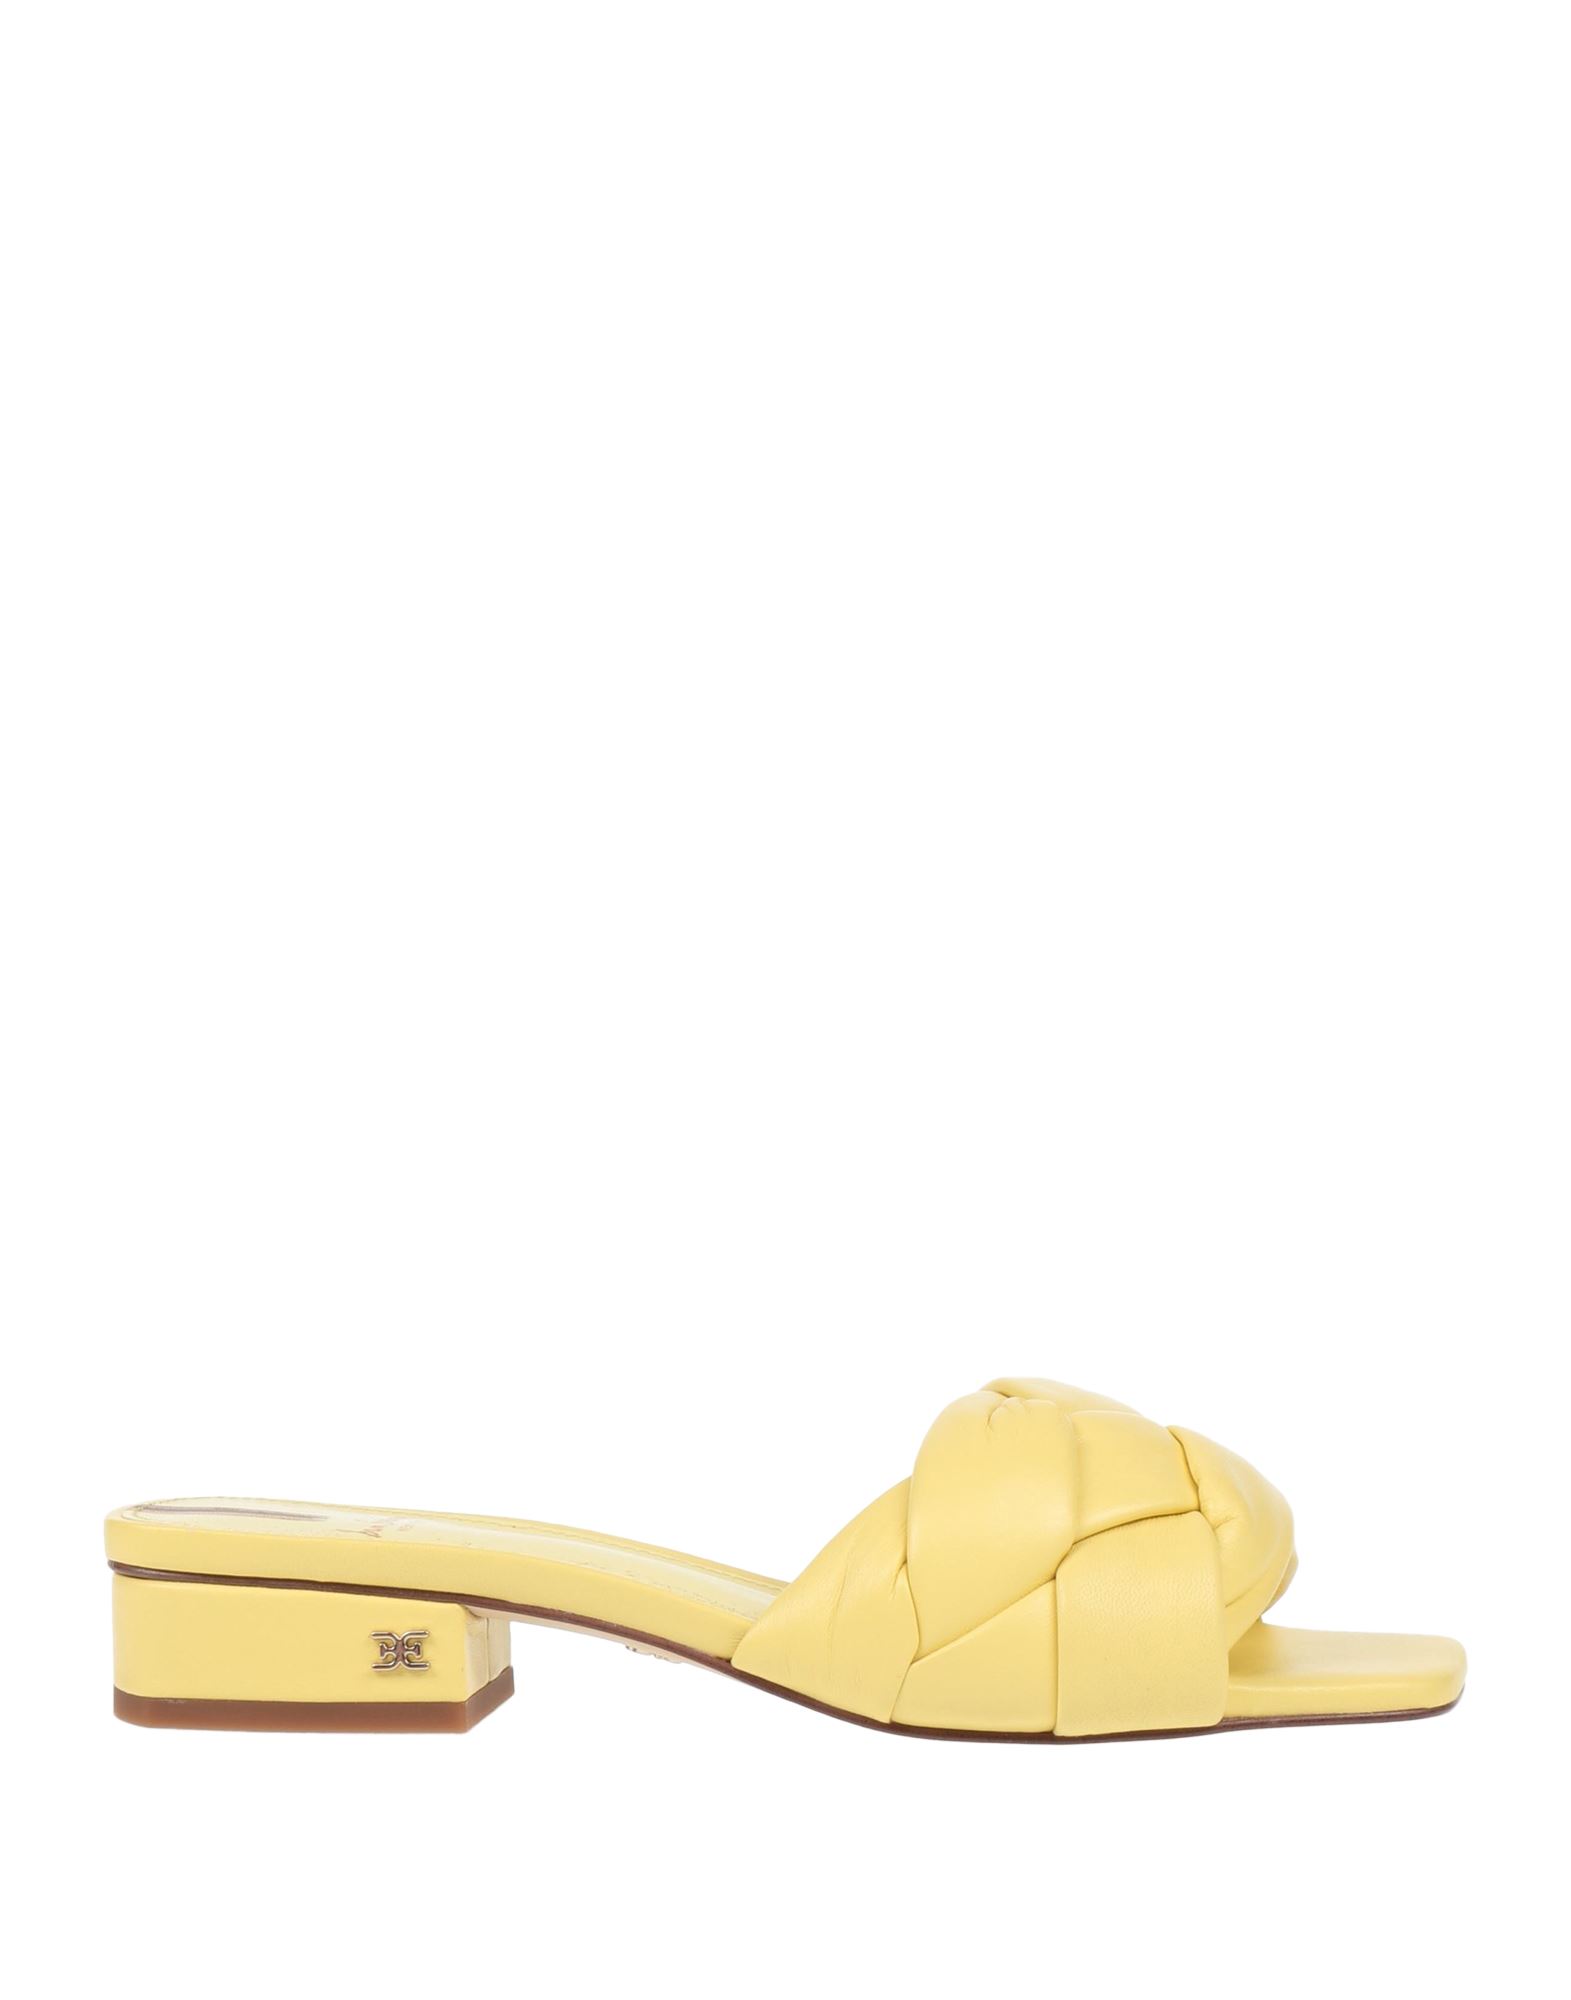 Sam Edelman Sandals In Yellow